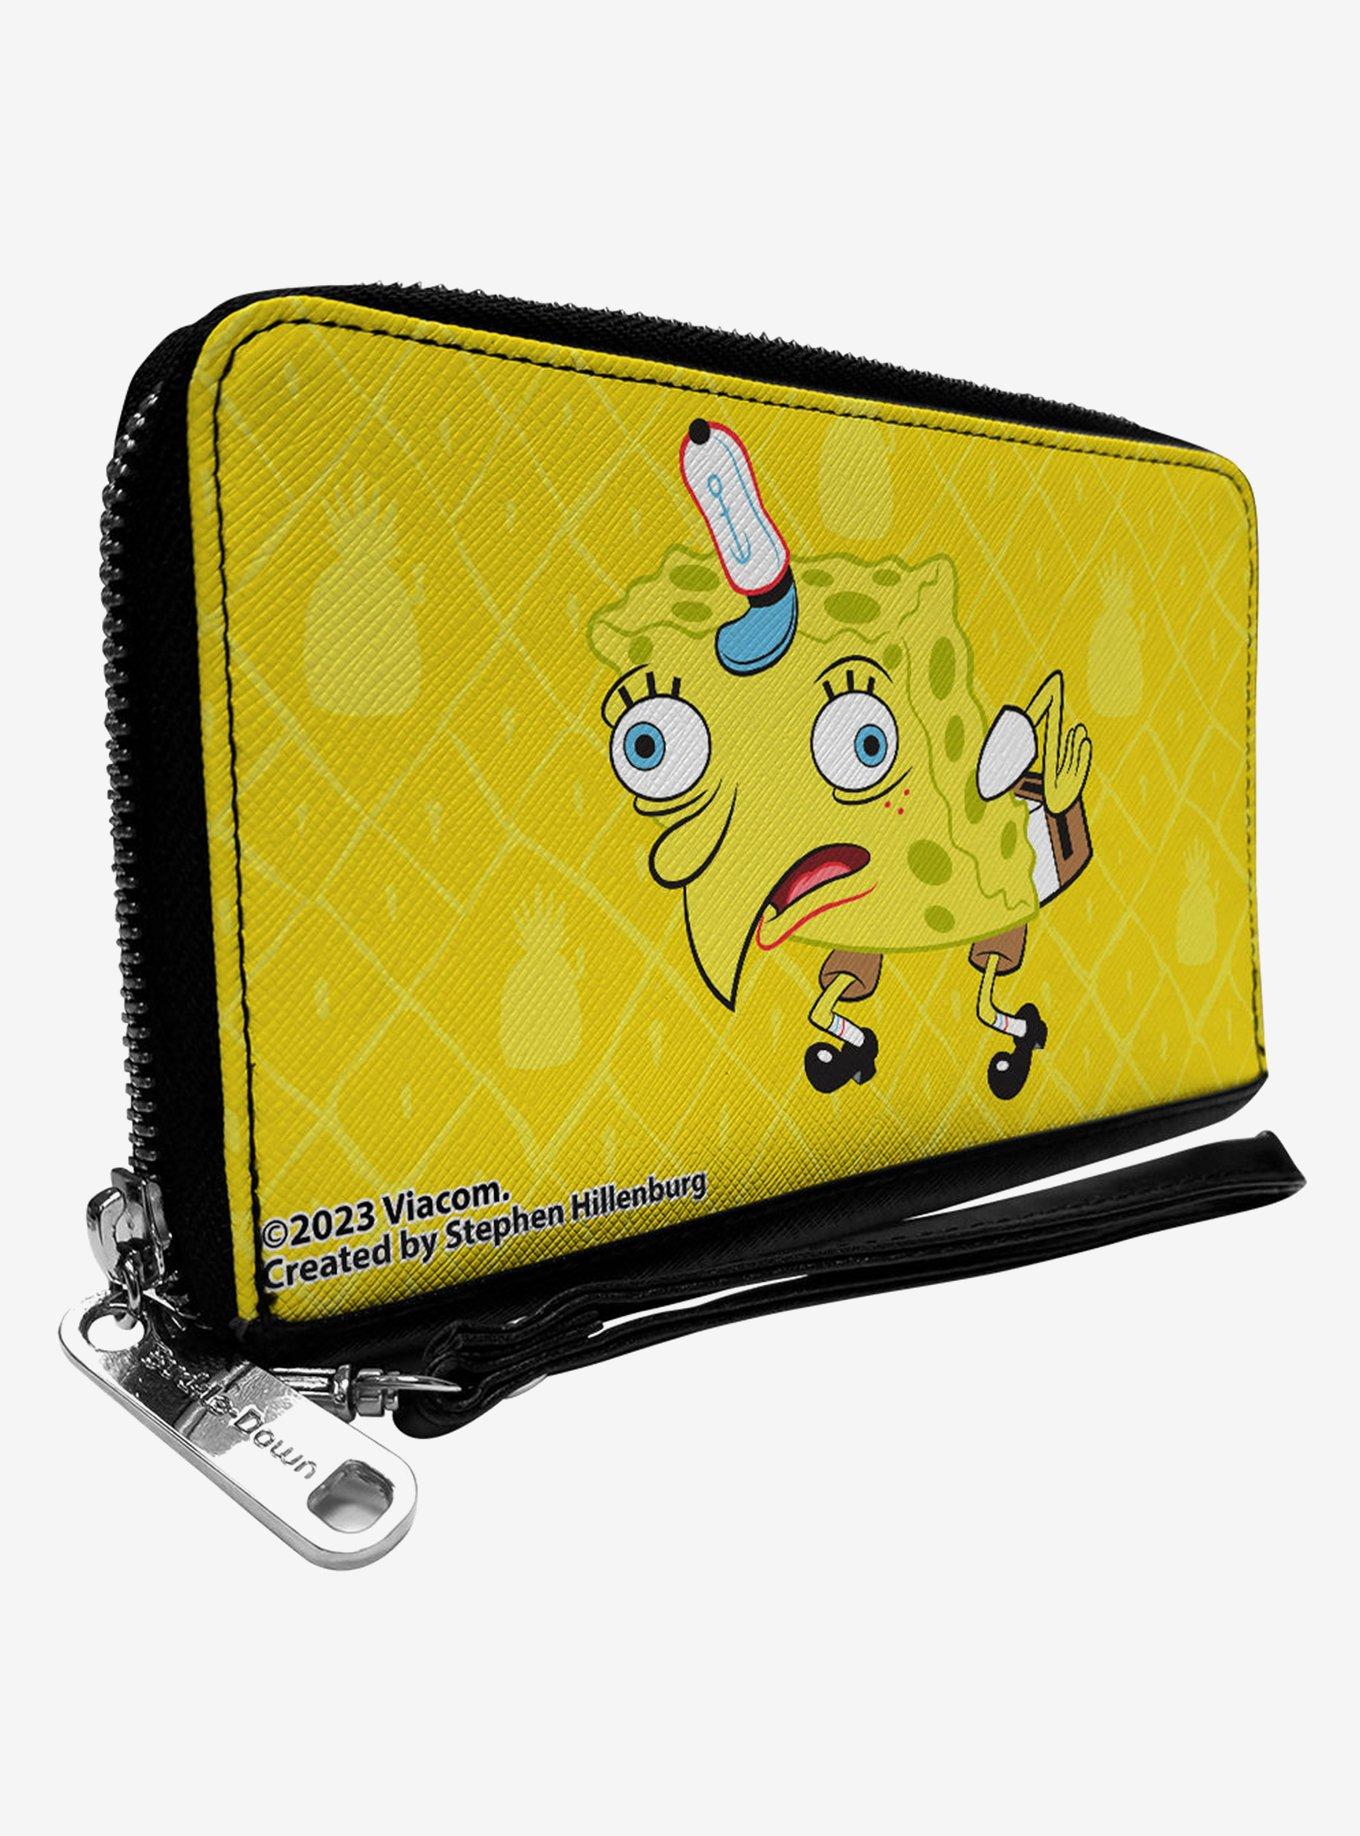 SpongeBob SquarePants Mocking Pineapple Close Up Zip Around Wallet